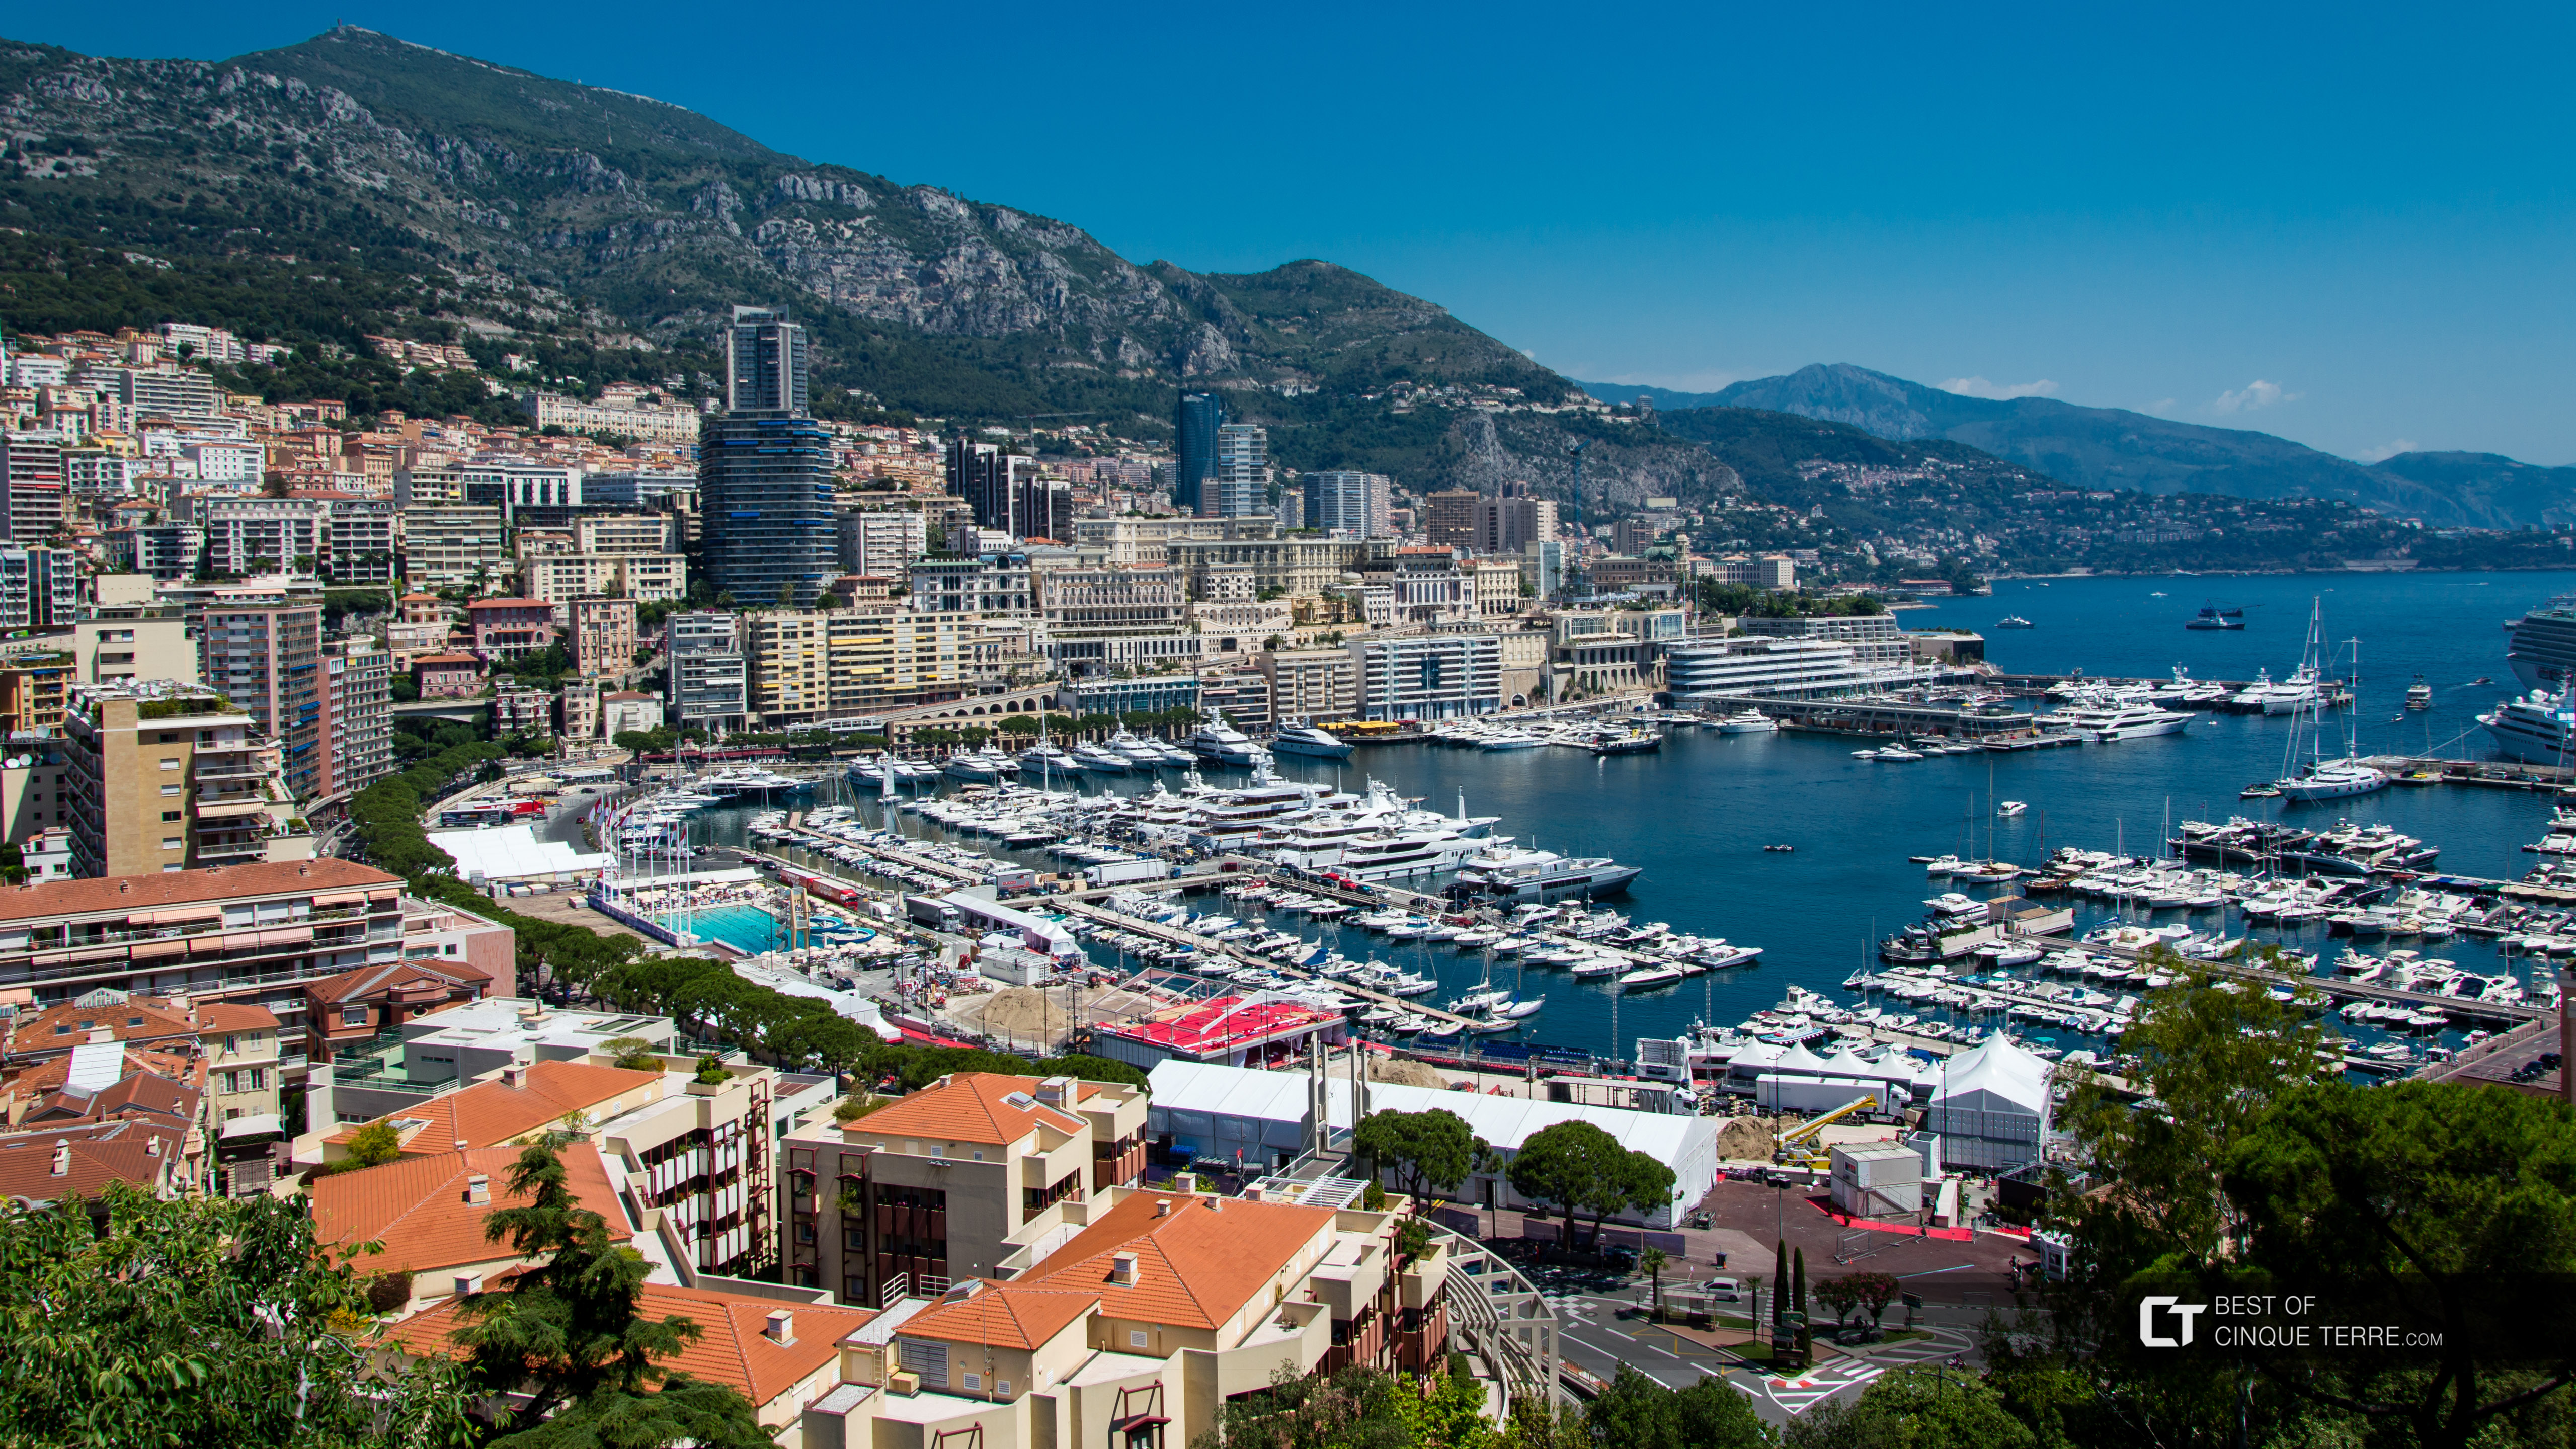 Ansicht des Hafens von Monte Carlo vom Platz des Fürstenpalasts, Monaco